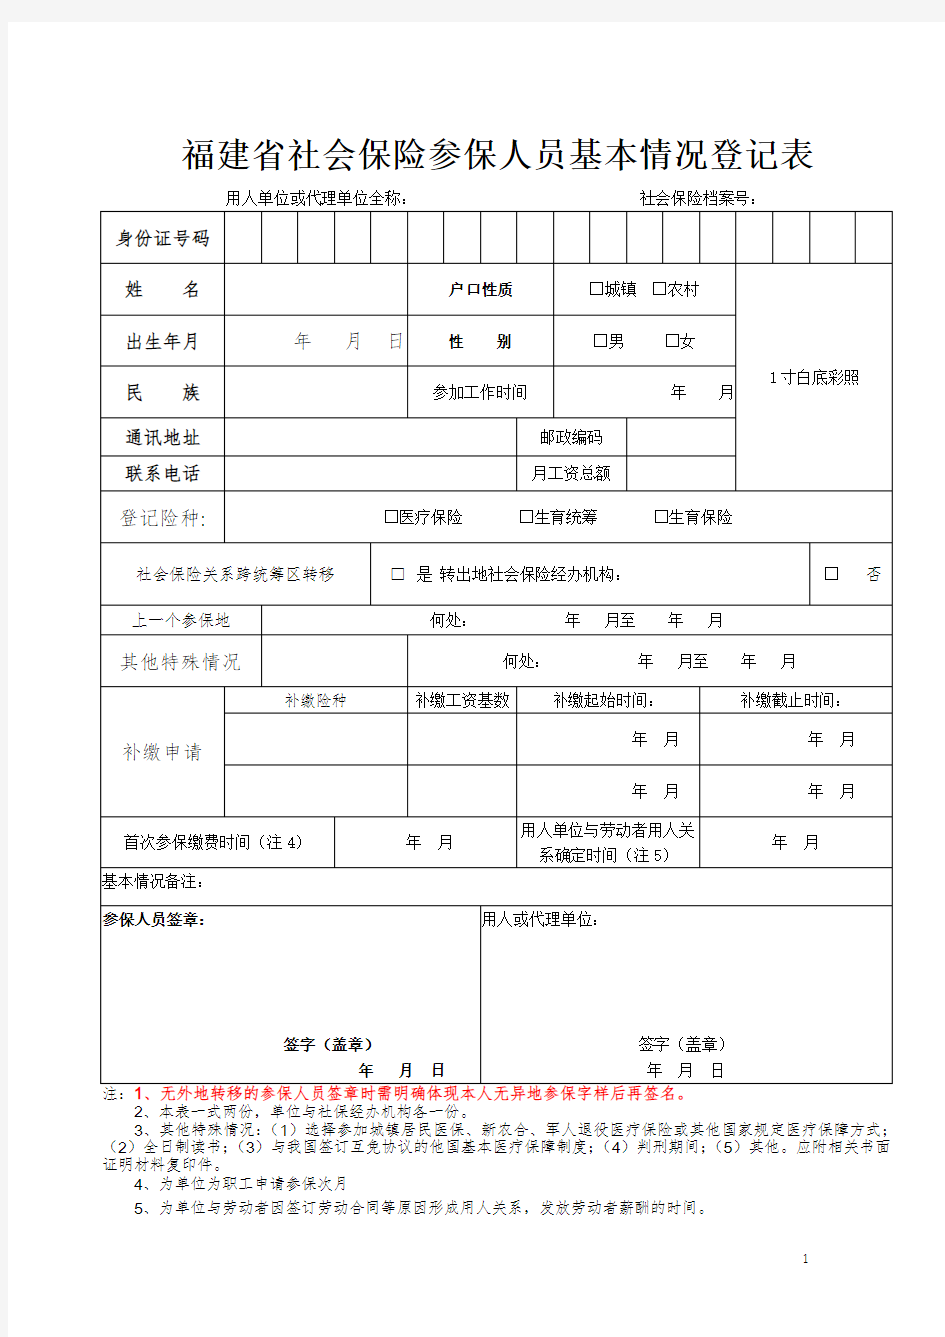 福建省社会保险参保人员基本情况登记表(新版)